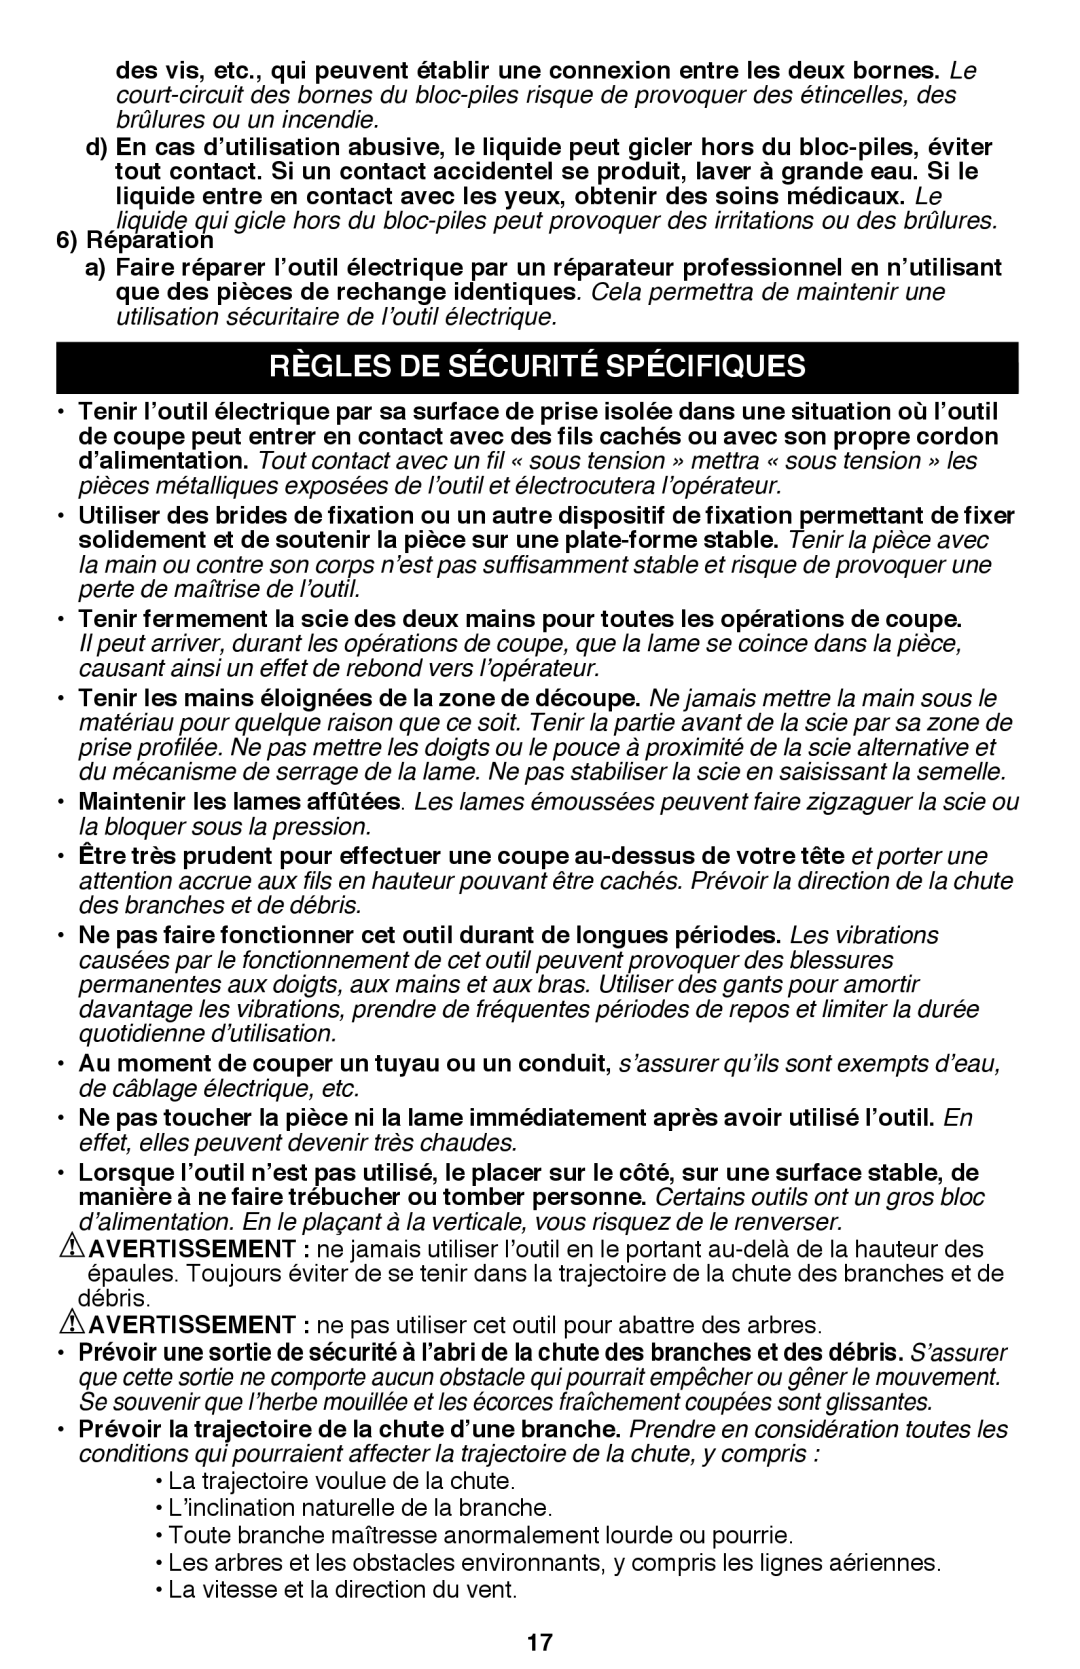 Black & Decker PSL12 instruction manual Règles de sécurité spécifiques 